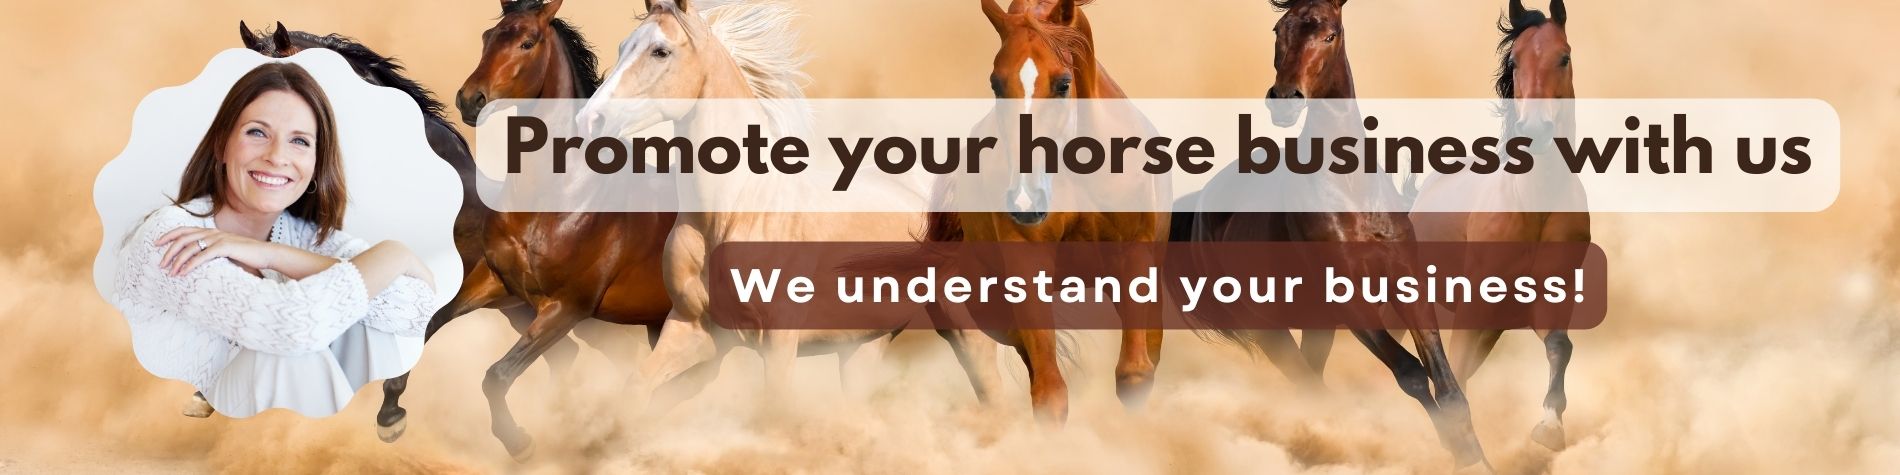 קדם את עסק הסוסים שלך איתנו אוהב סוסים? יש לך מה להציע לאנשים סוסים? רוצה להגיע להרבה אנשי סוסים? צור איתנו קשר עכשיו!